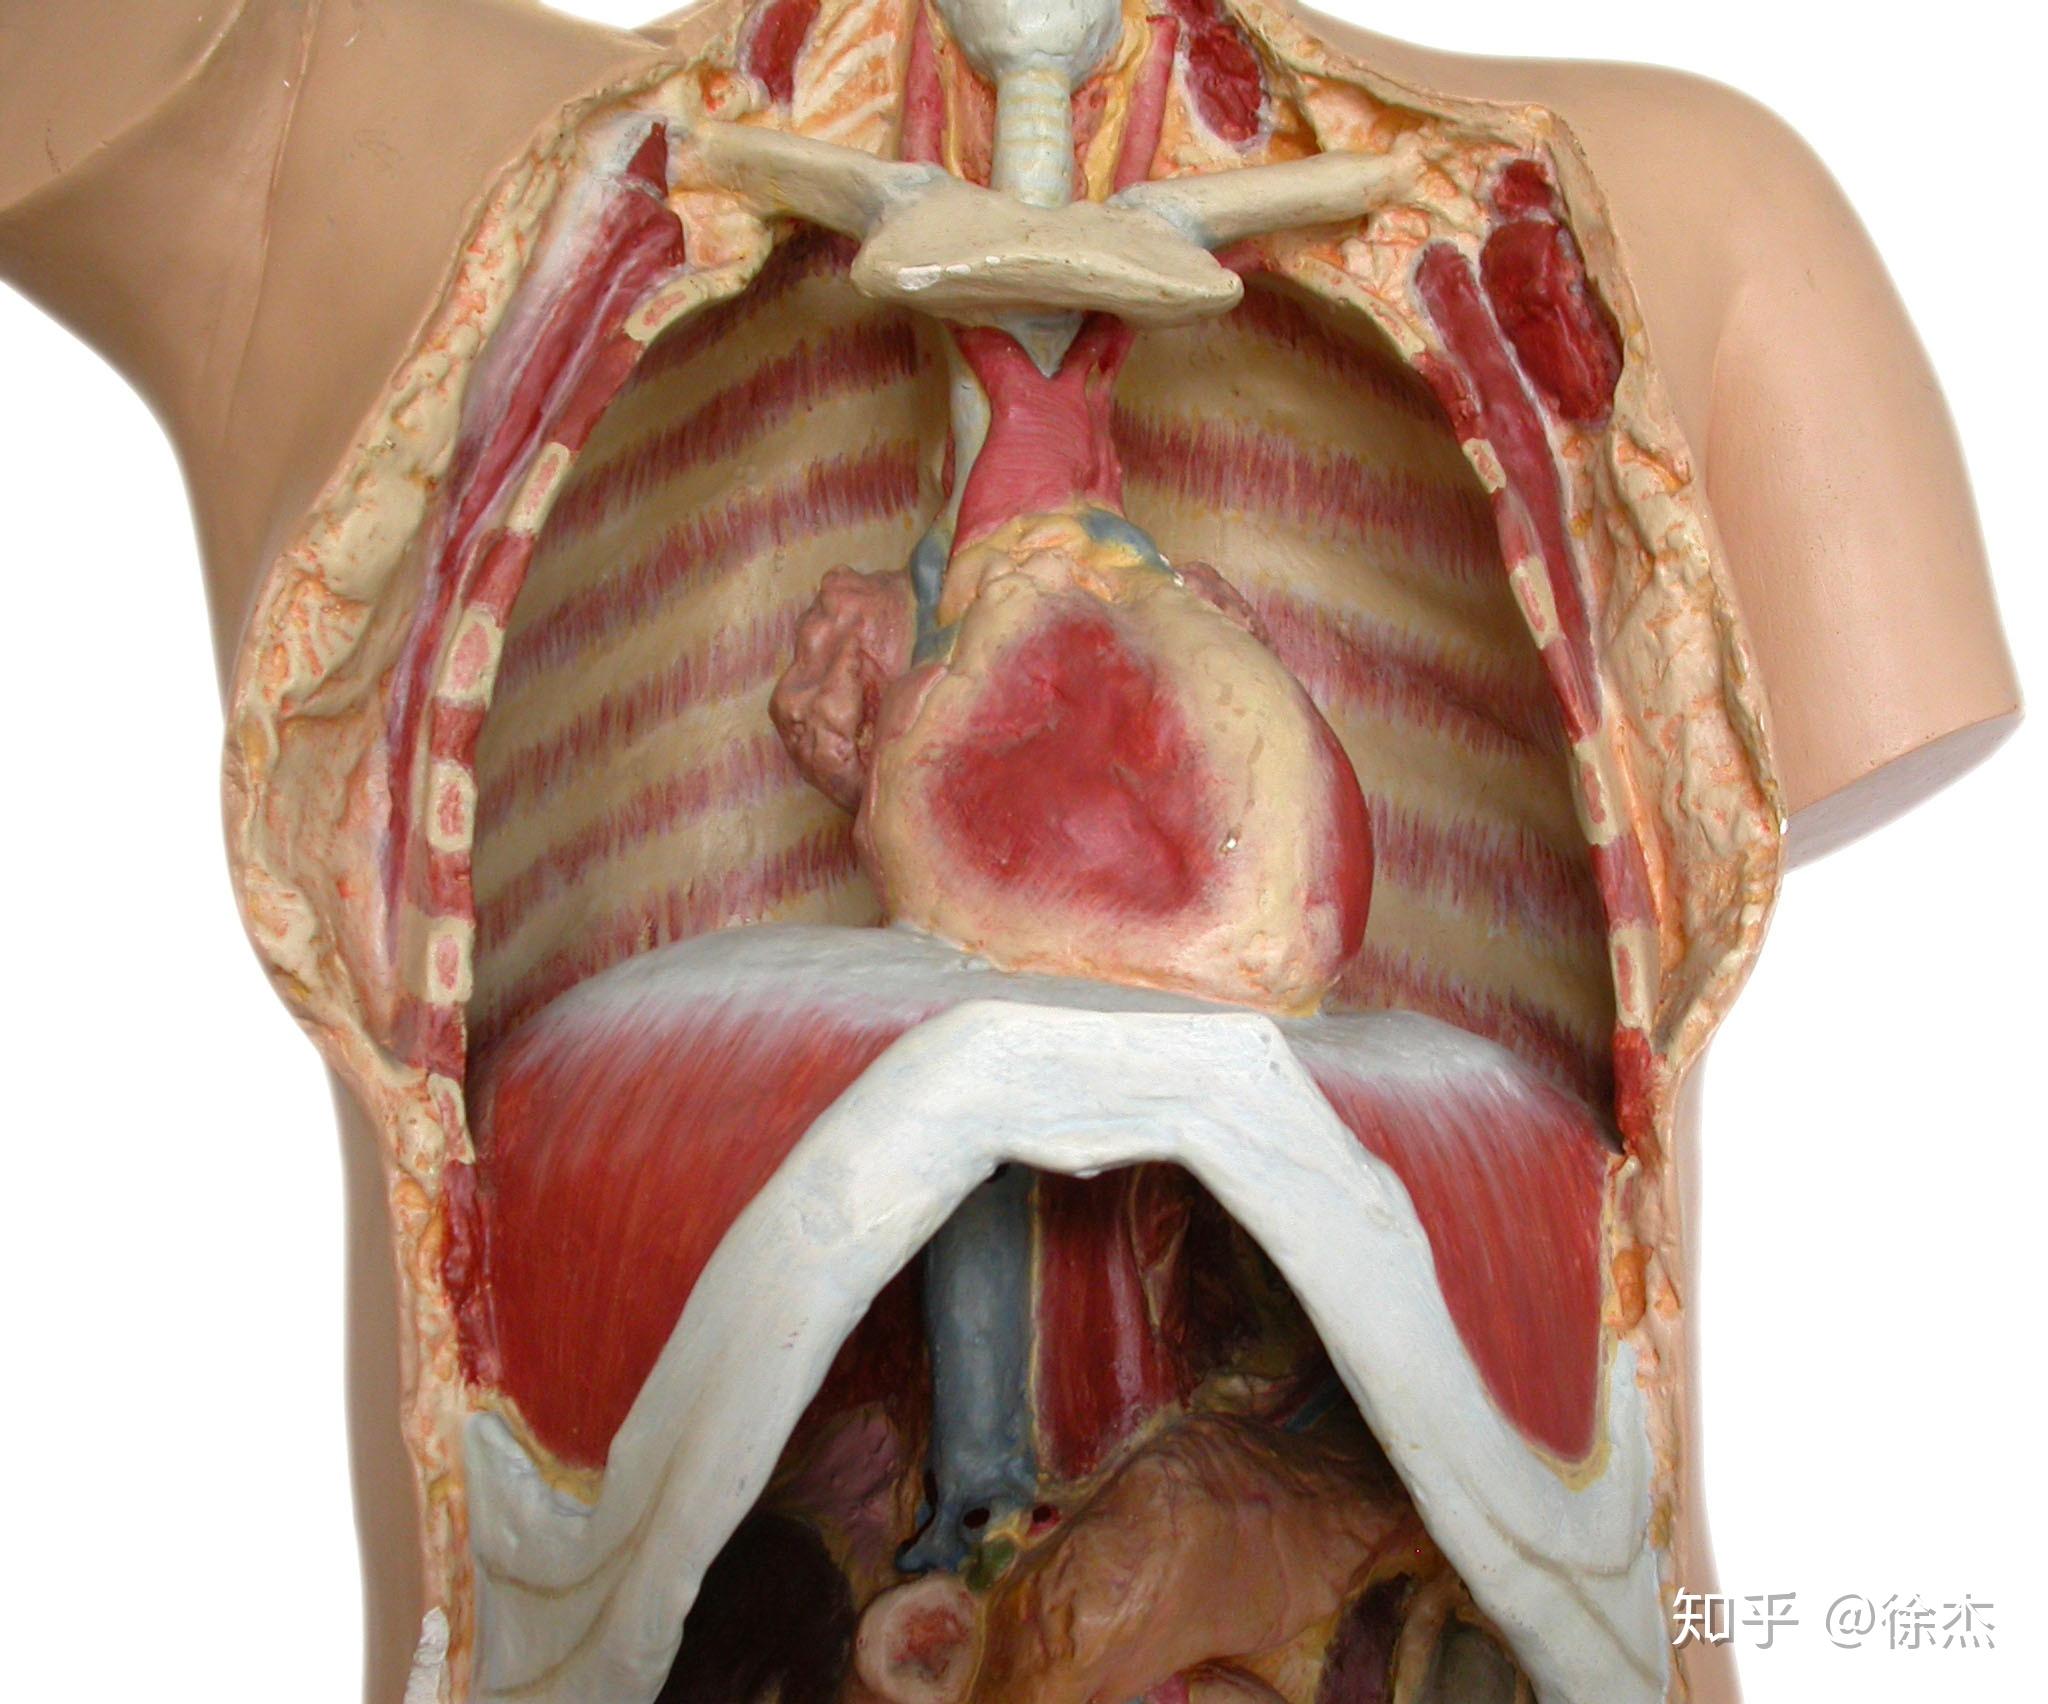 但前侧腹壁膨胀只是横膈膜呼吸的一部分,腹壁肌肉的膨胀应该是3d的,在